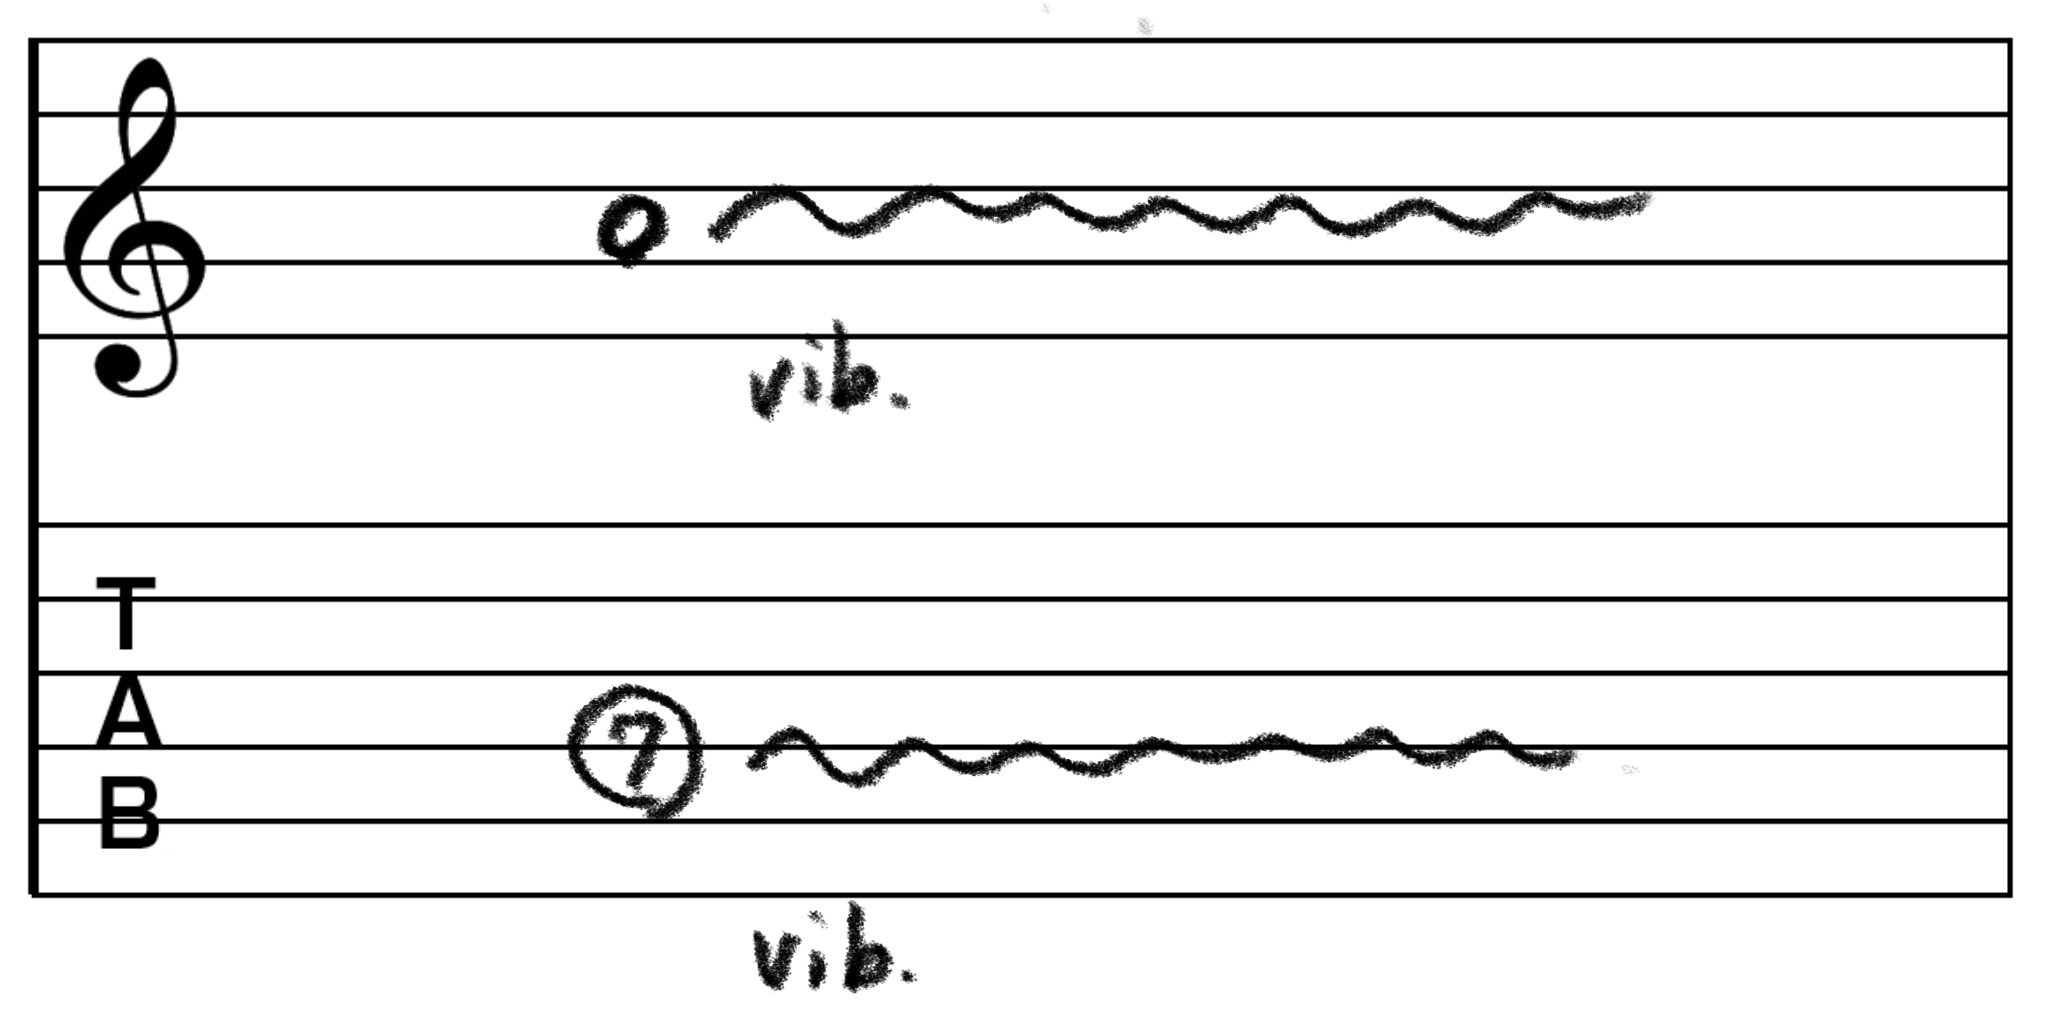 ビブラートのTAB譜です。 4弦7フレットをビブラートをかけて弾くよう指示しています。